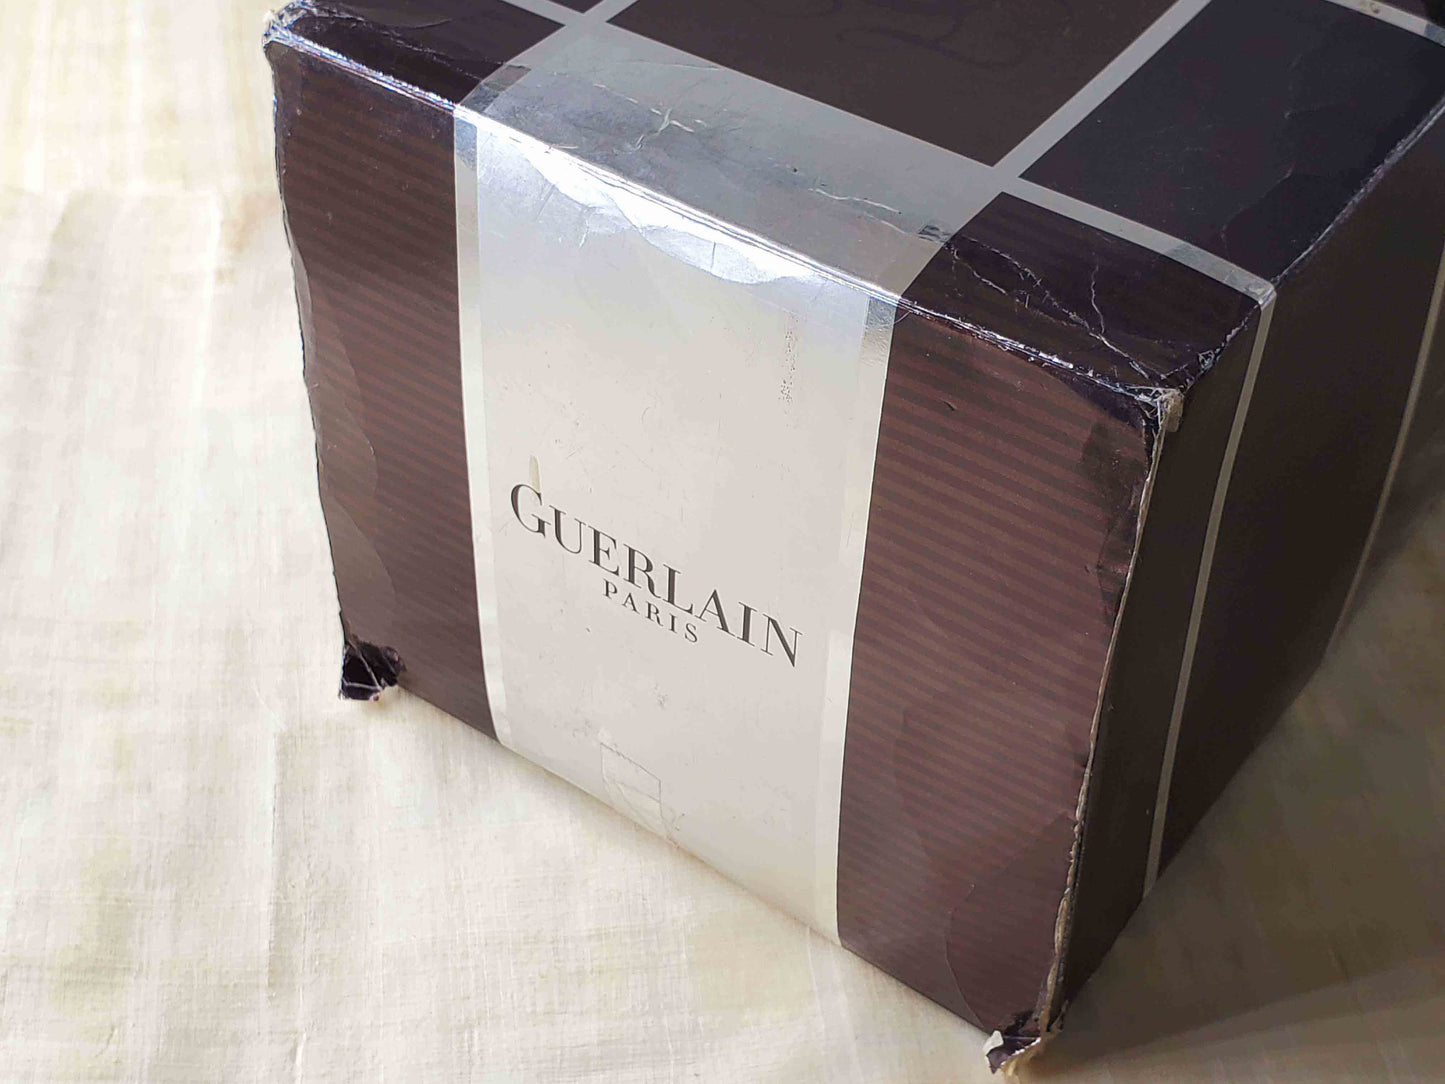 L'Instant de Guerlain pour Homme for men EDT Spray 125 ml 4.2 oz + Shower Gel 75 ml + Bag, Rare, Vintage, SET As Pic